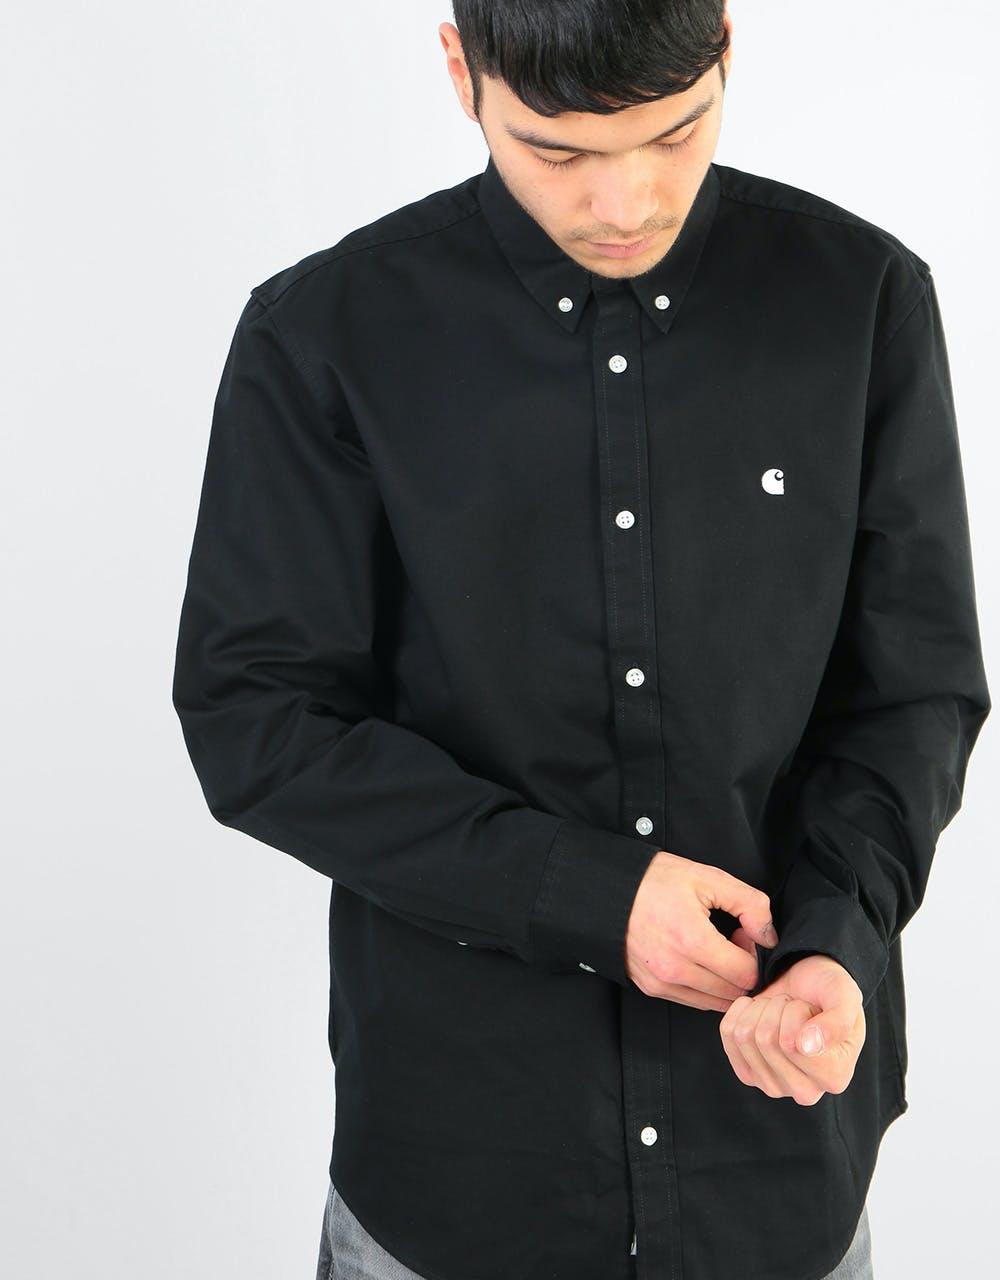 Carhartt WIP L/S Madison Shirt - Black/Wax